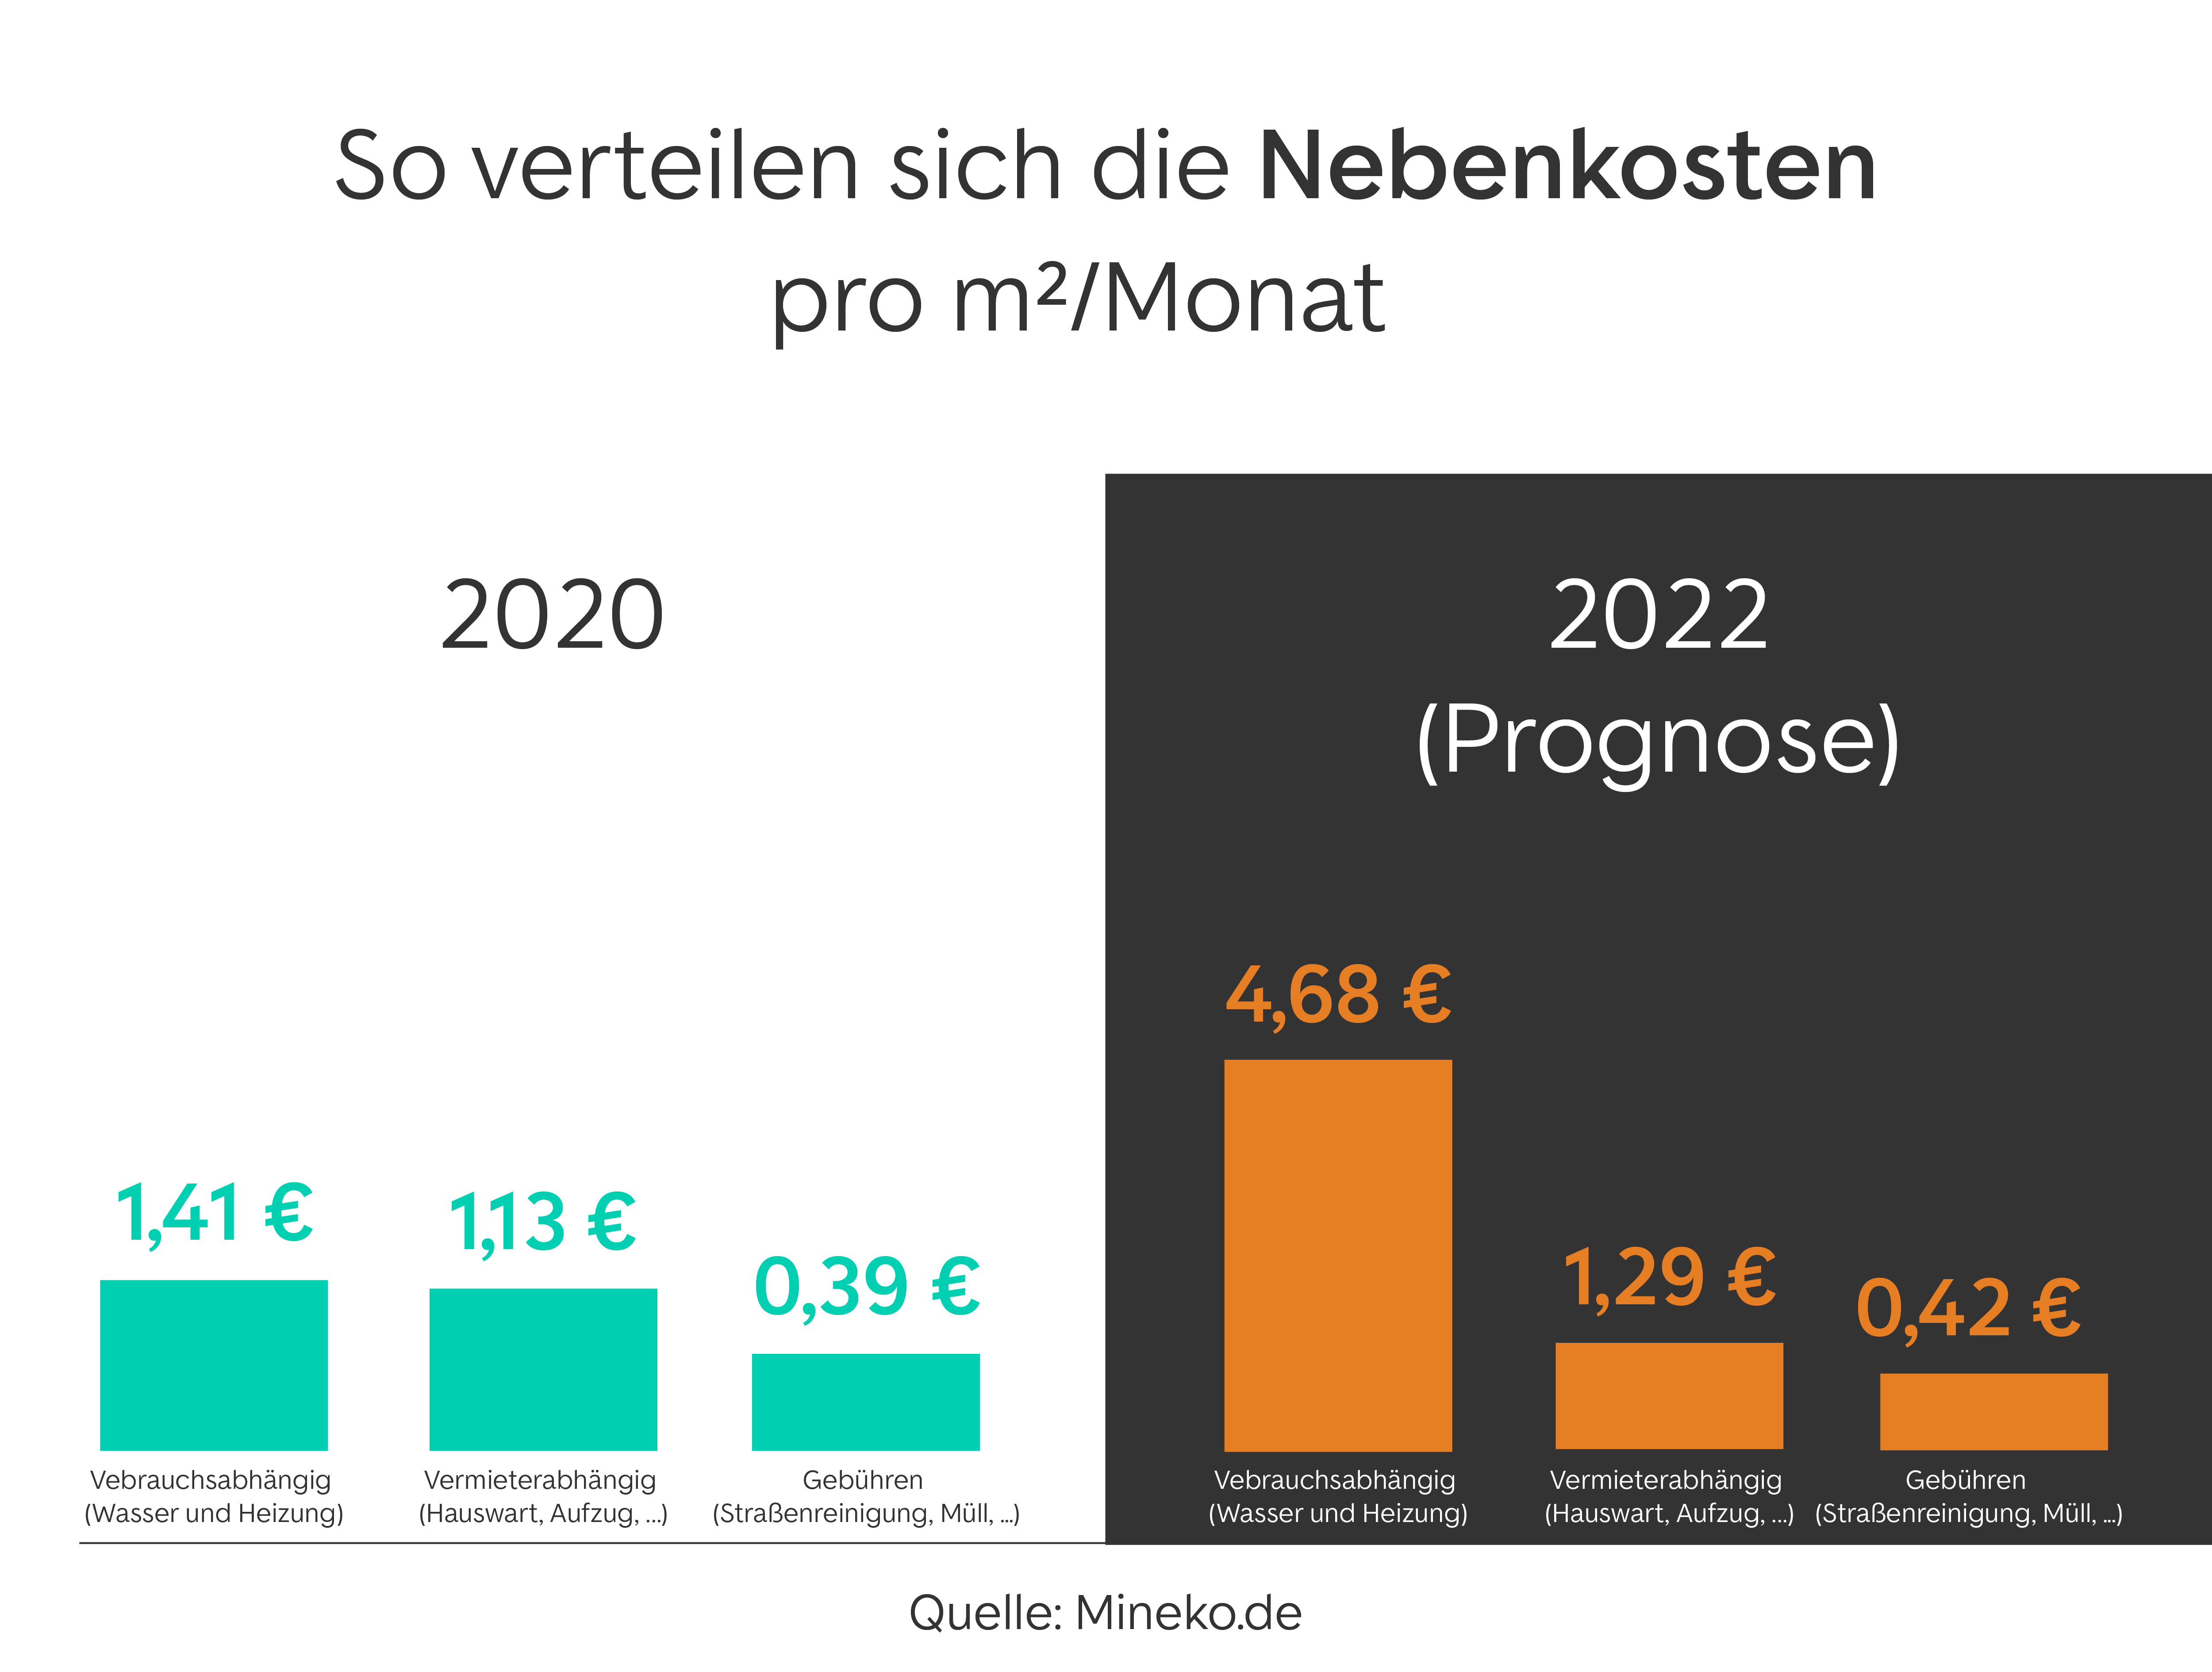 Enerrgieeffizienzklassen in Deutschland